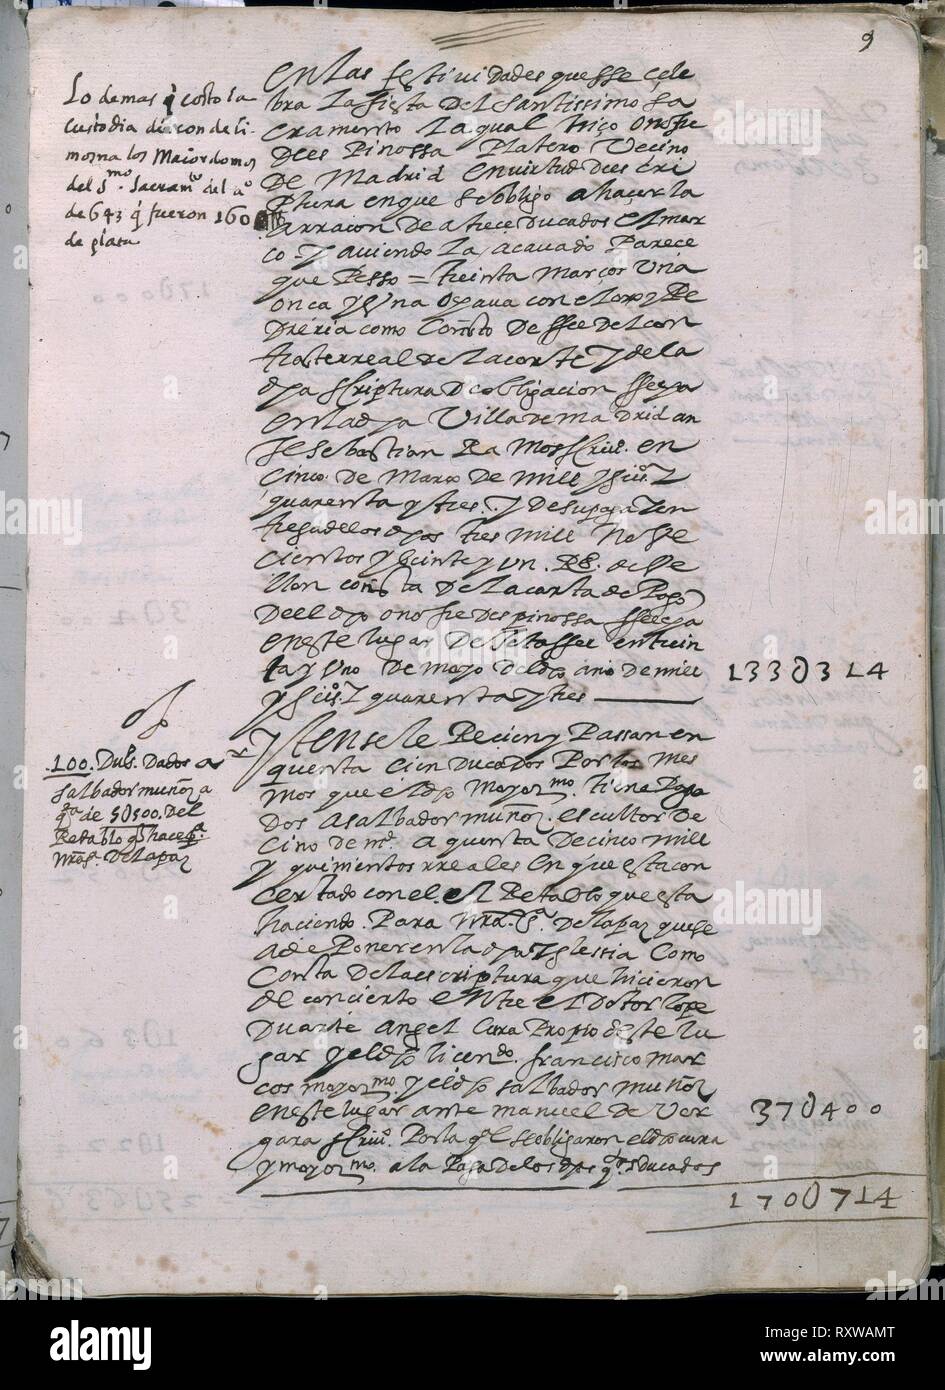 LIBRO DE FABRICA DE LA CATEDRAL DE GETAFE - Nº4 - FOL 9R - AÑO 1644 A 1692. Location: ARCHIVO HISTORICO DIOCESANO. GETAFE. MADRID. SPAIN. Stock Photo